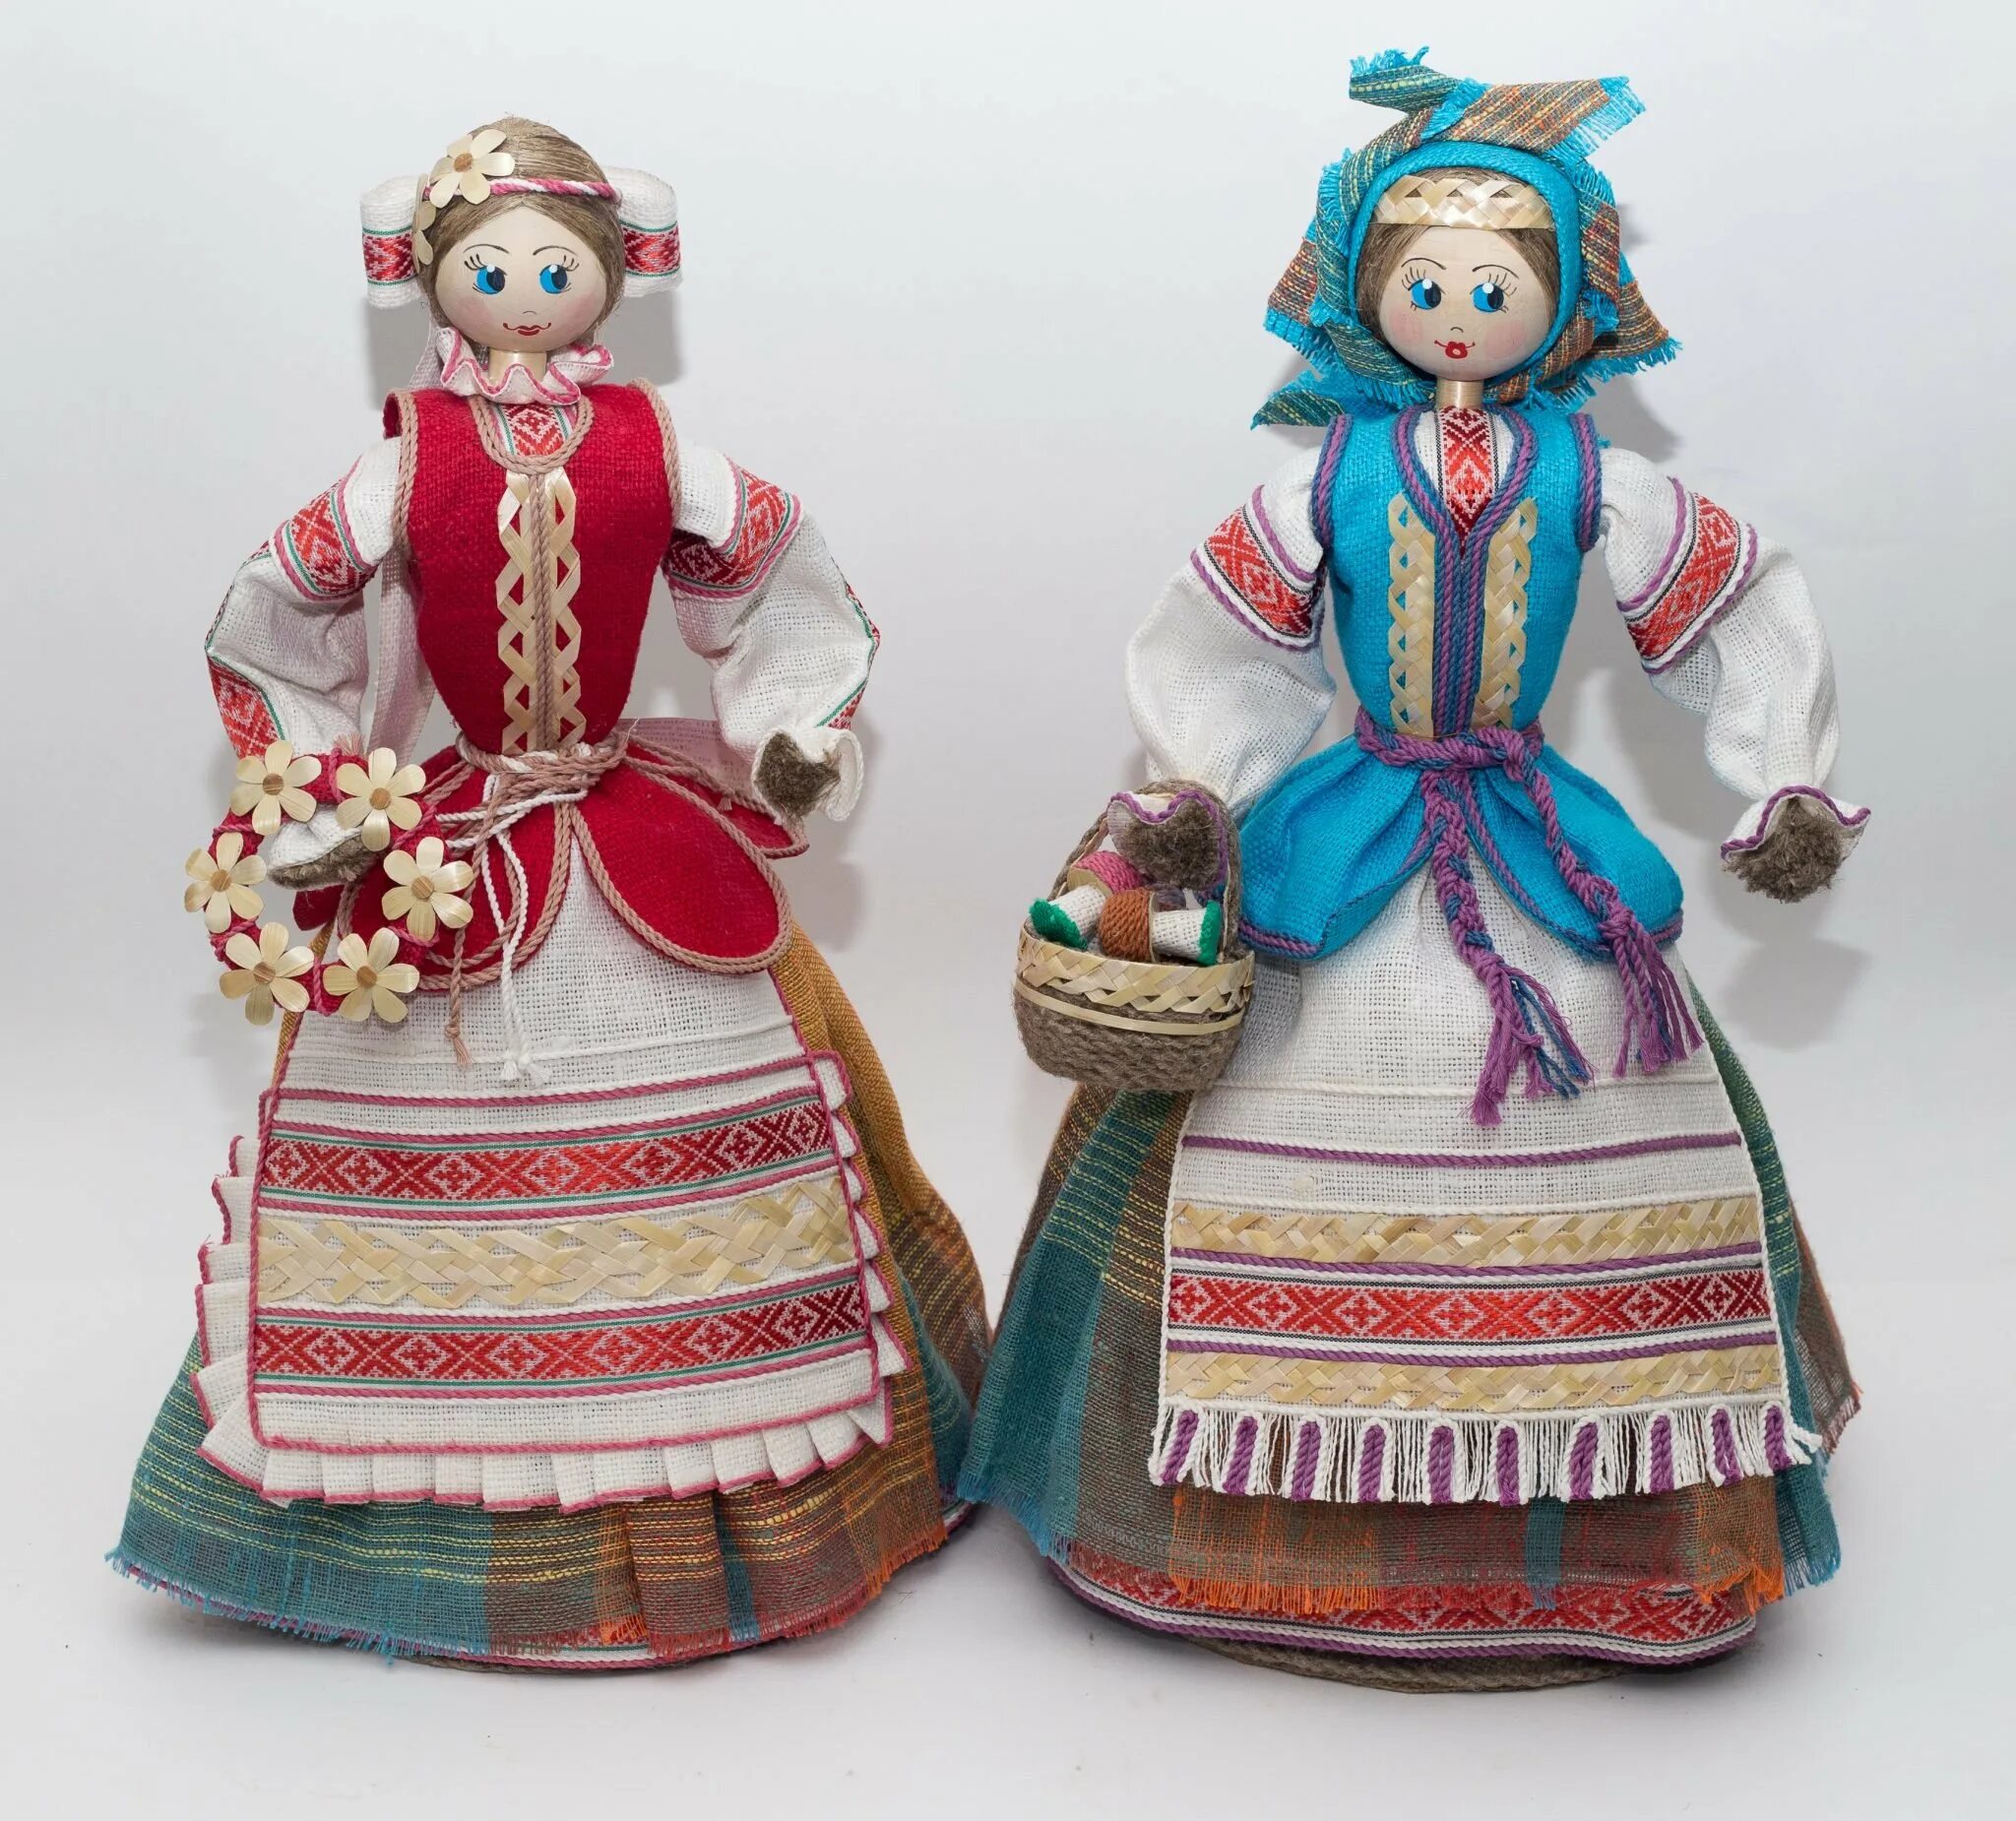 Лене купили куклу. Белорусские куклы. Куклы в национальных костюмах. Белорусские национальные куклы. Белорусская народная кукла.